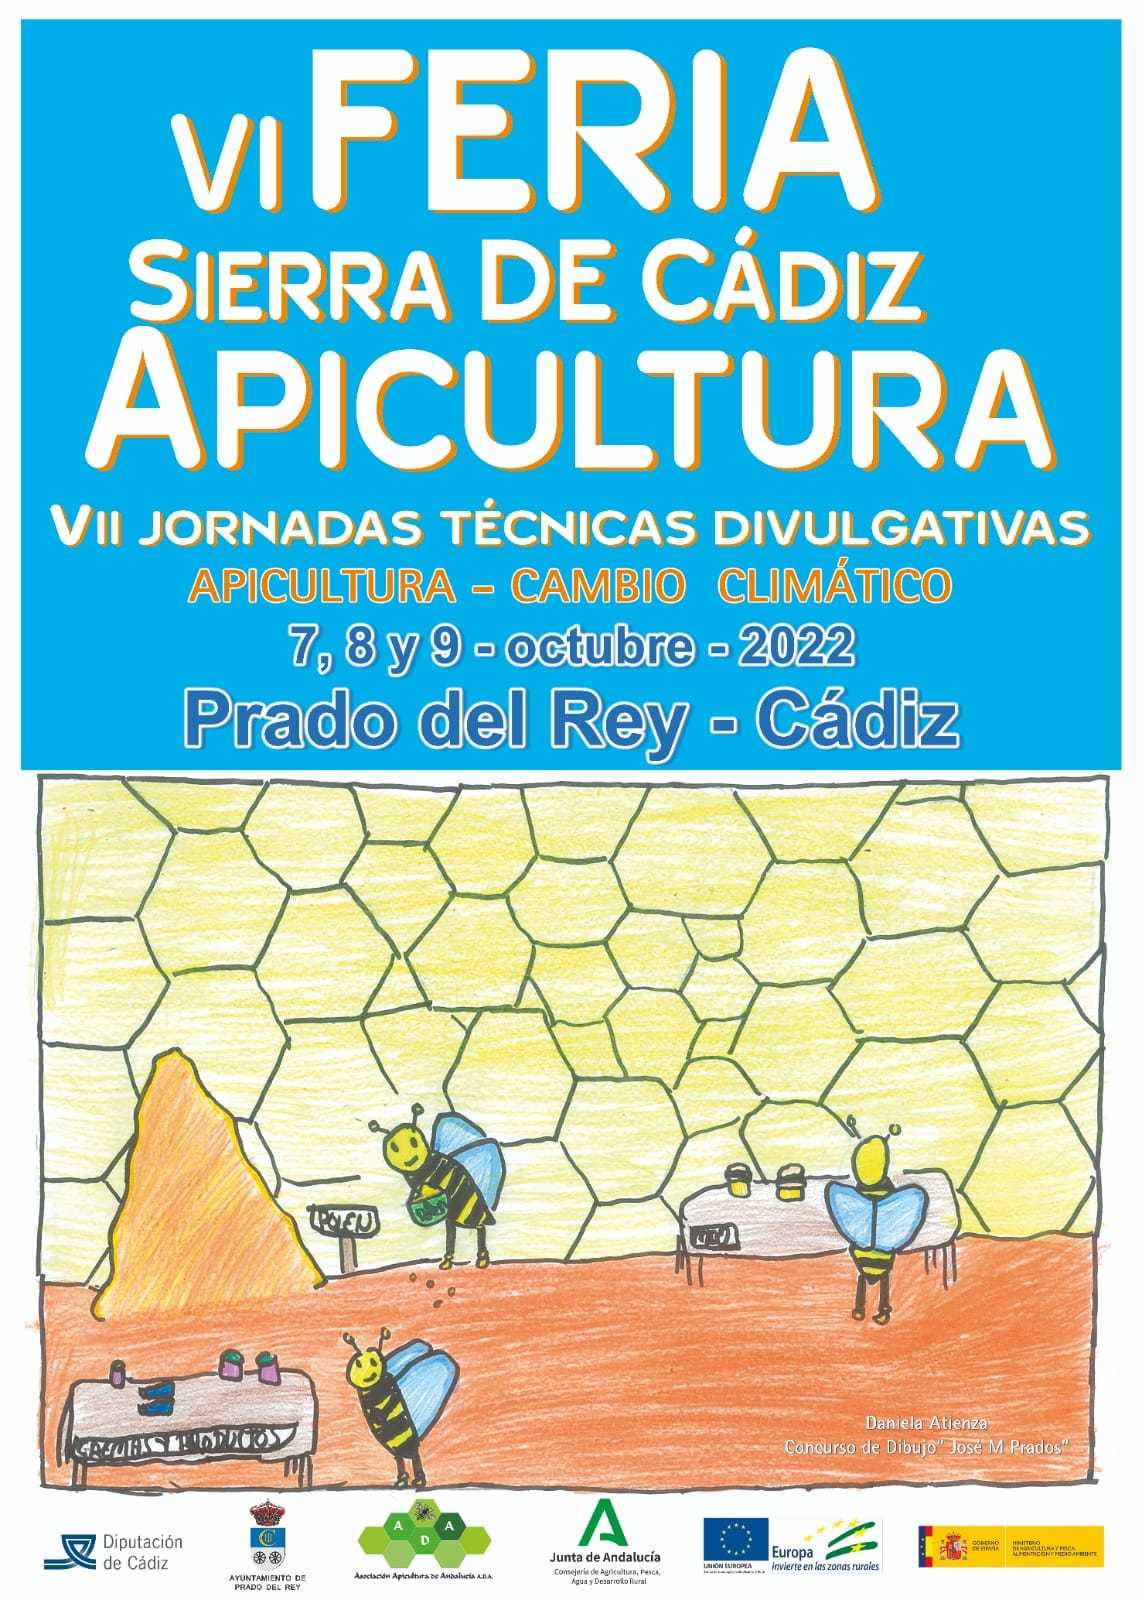 Feria de Apicultura de Andalucía